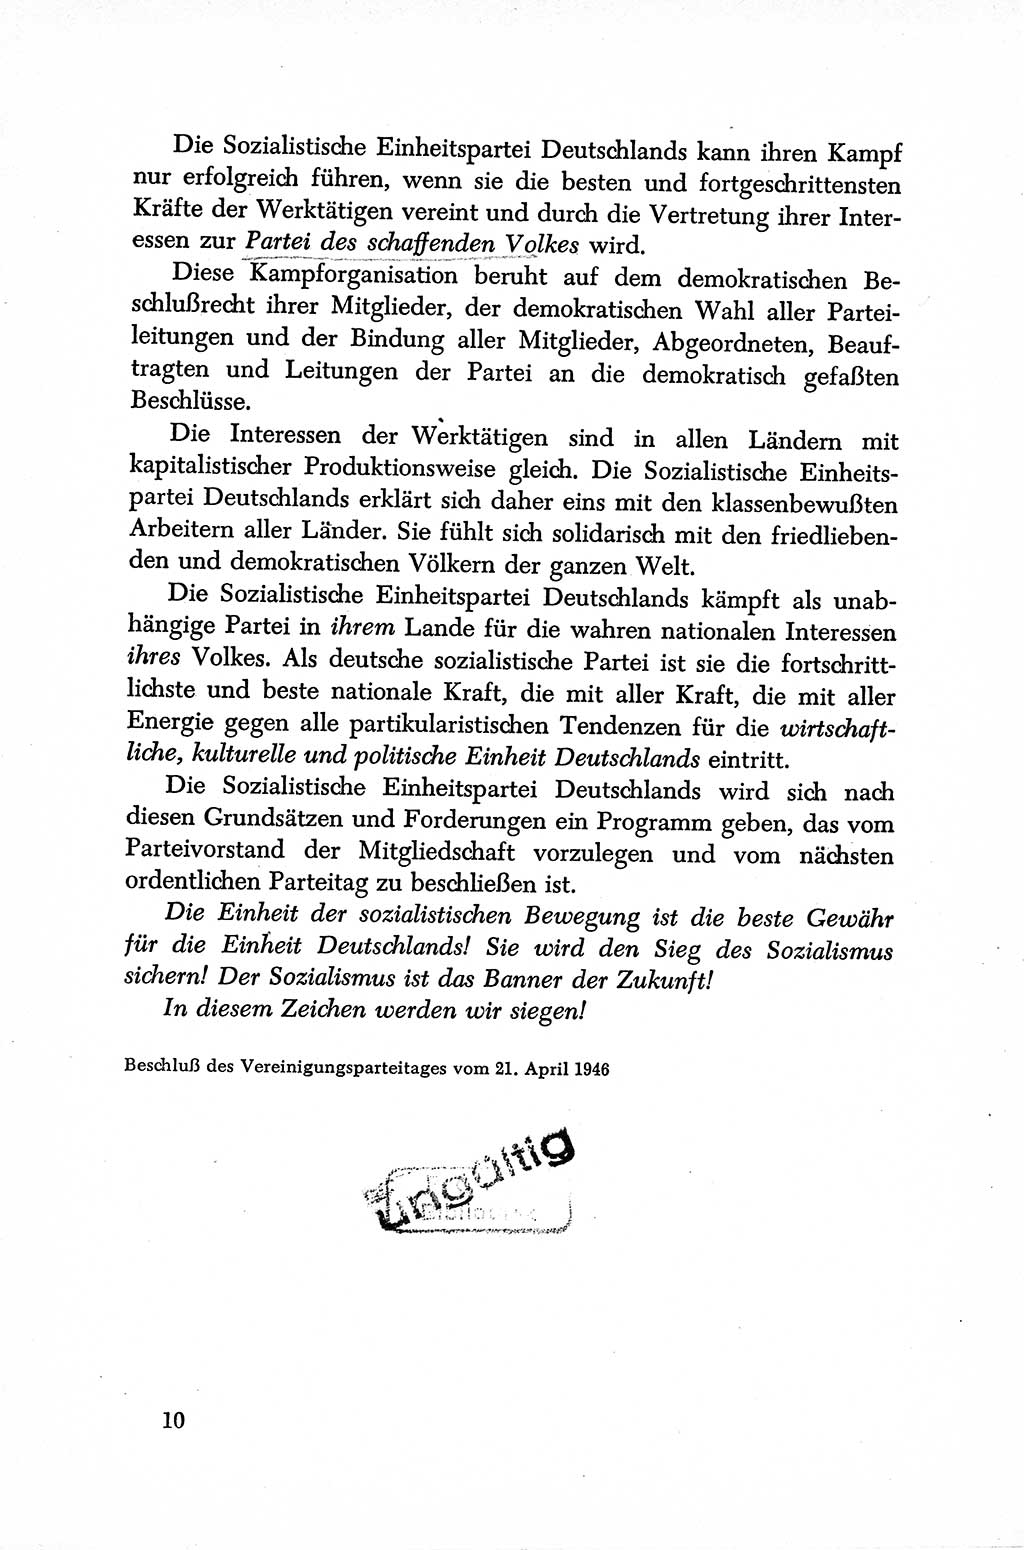 Dokumente der Sozialistischen Einheitspartei Deutschlands (SED) [Sowjetische Besatzungszone (SBZ) Deutschlands] 1946-1948, Seite 10 (Dok. SED SBZ Dtl. 1946-1948, S. 10)